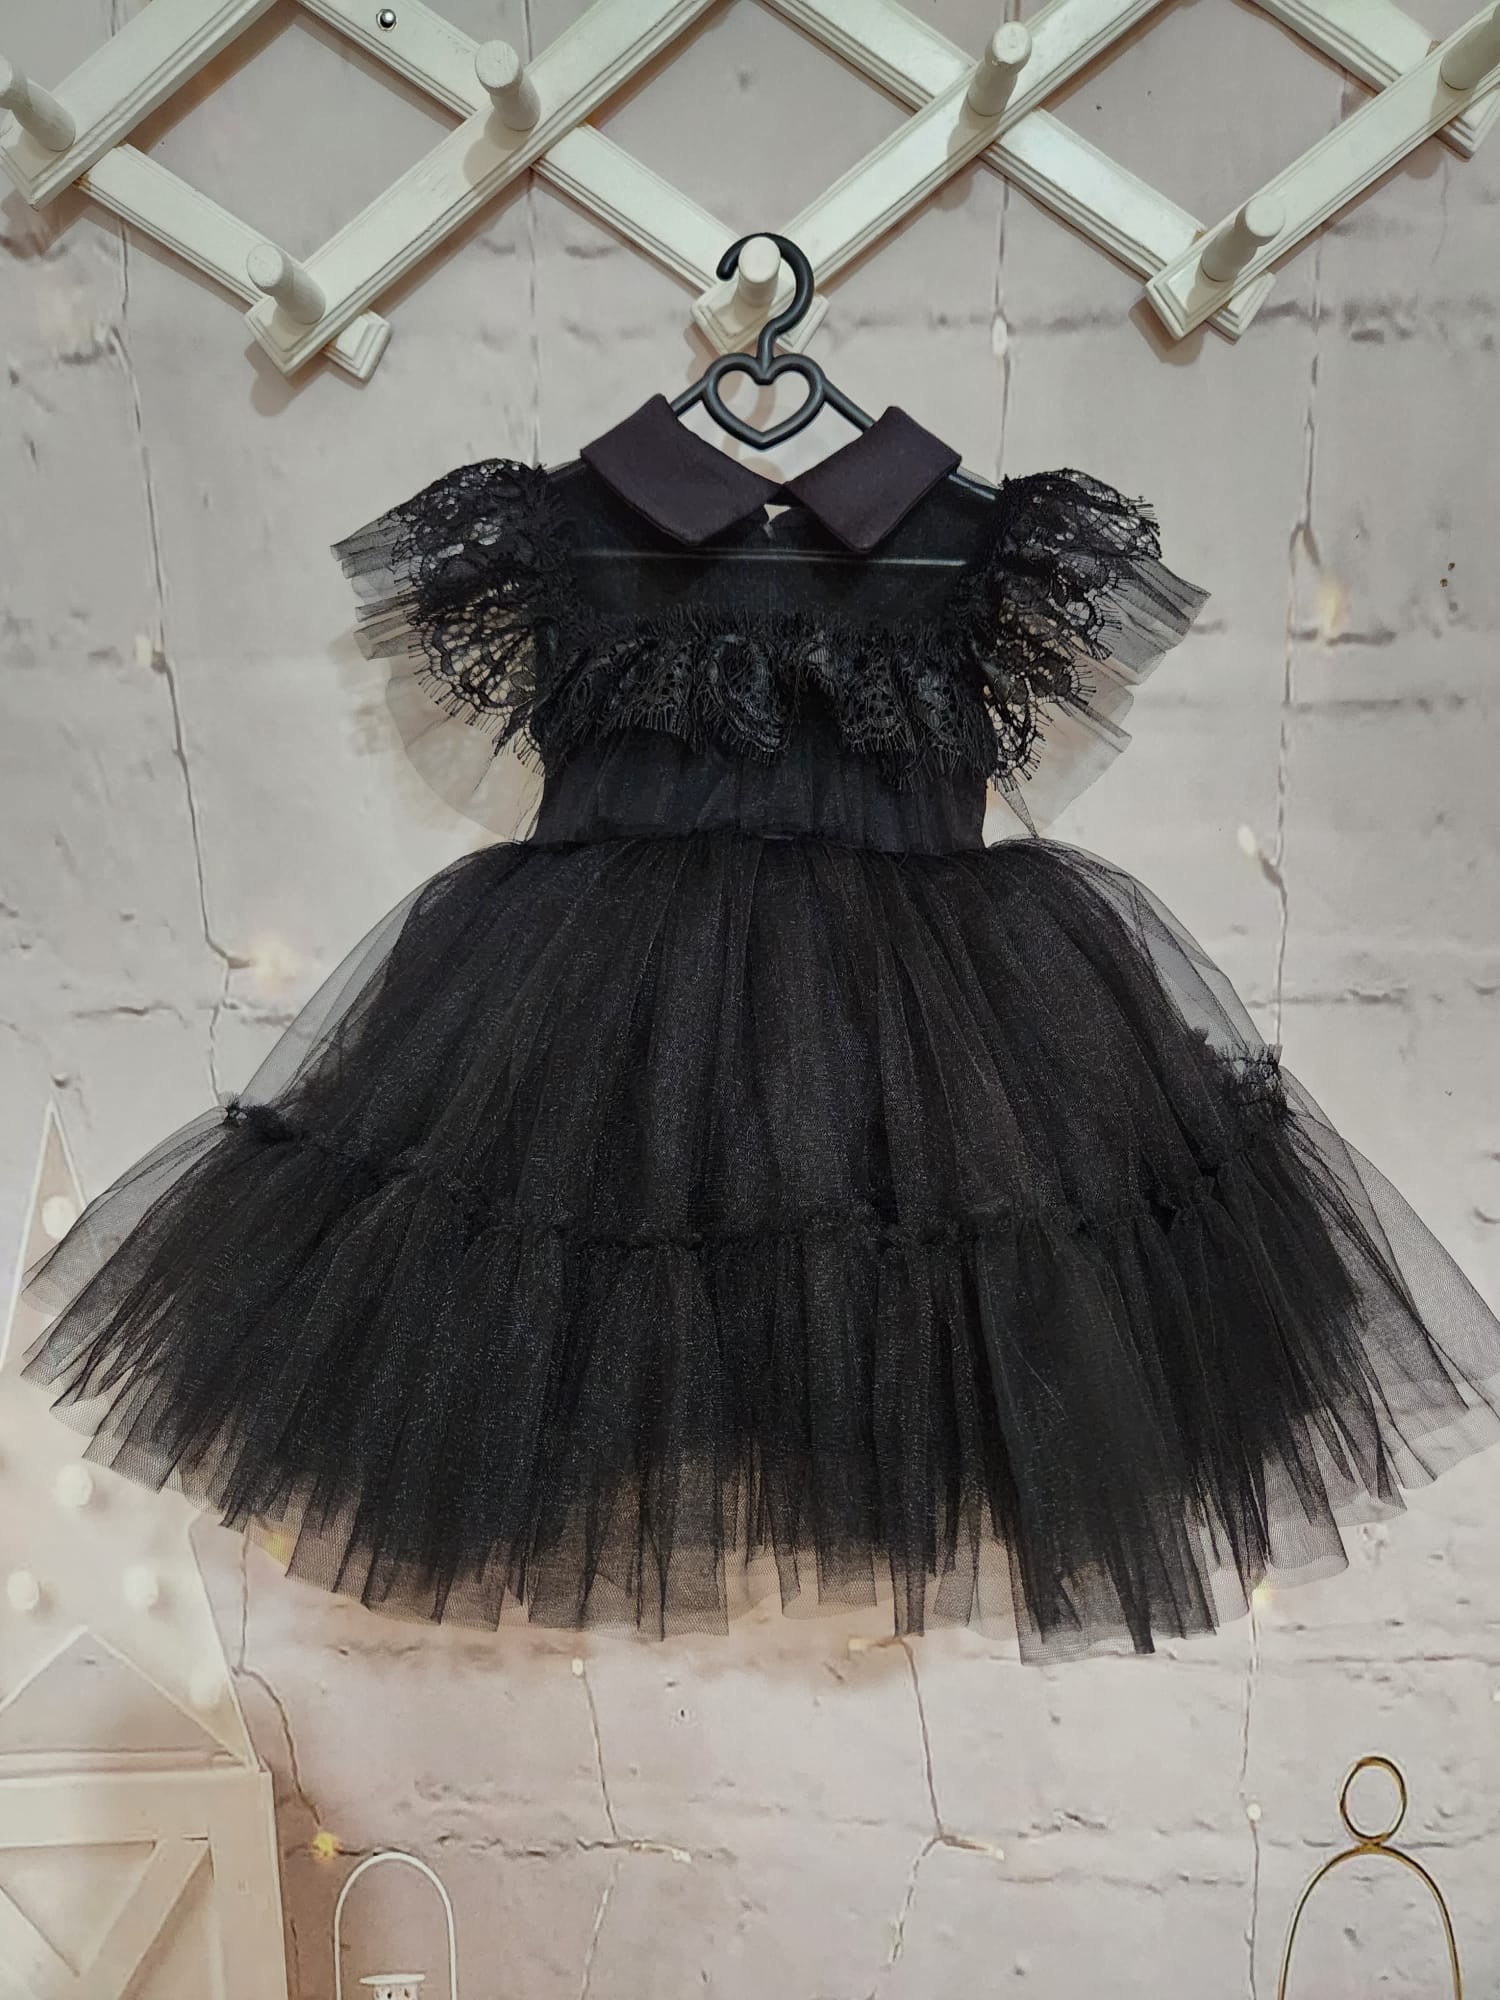 Wednesday Siyah Vintage Kız Bebek Elbisesi,Doğum günü elbise, fotoğraf çekim elbise,0-10 Yaşa Uygun